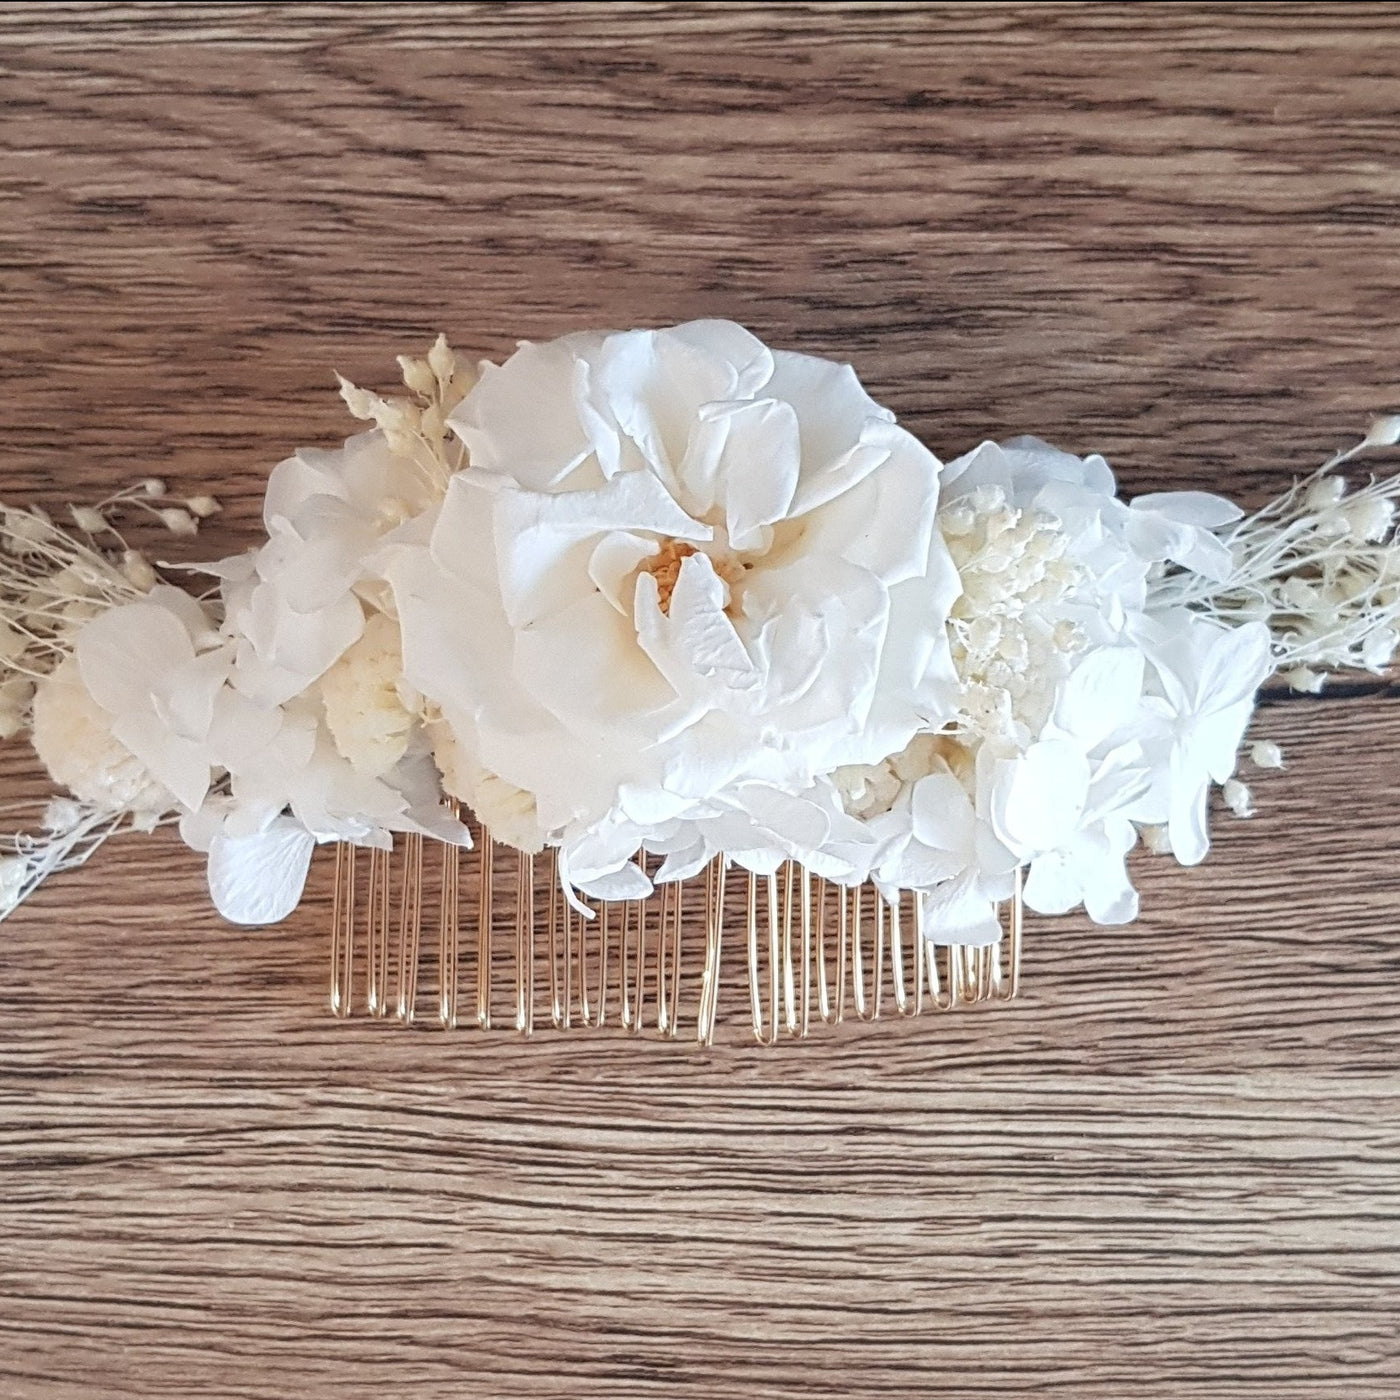 Le peigne stabilisé éternel blanc est composé de Rose, Hortensia, Broom. Vue de face